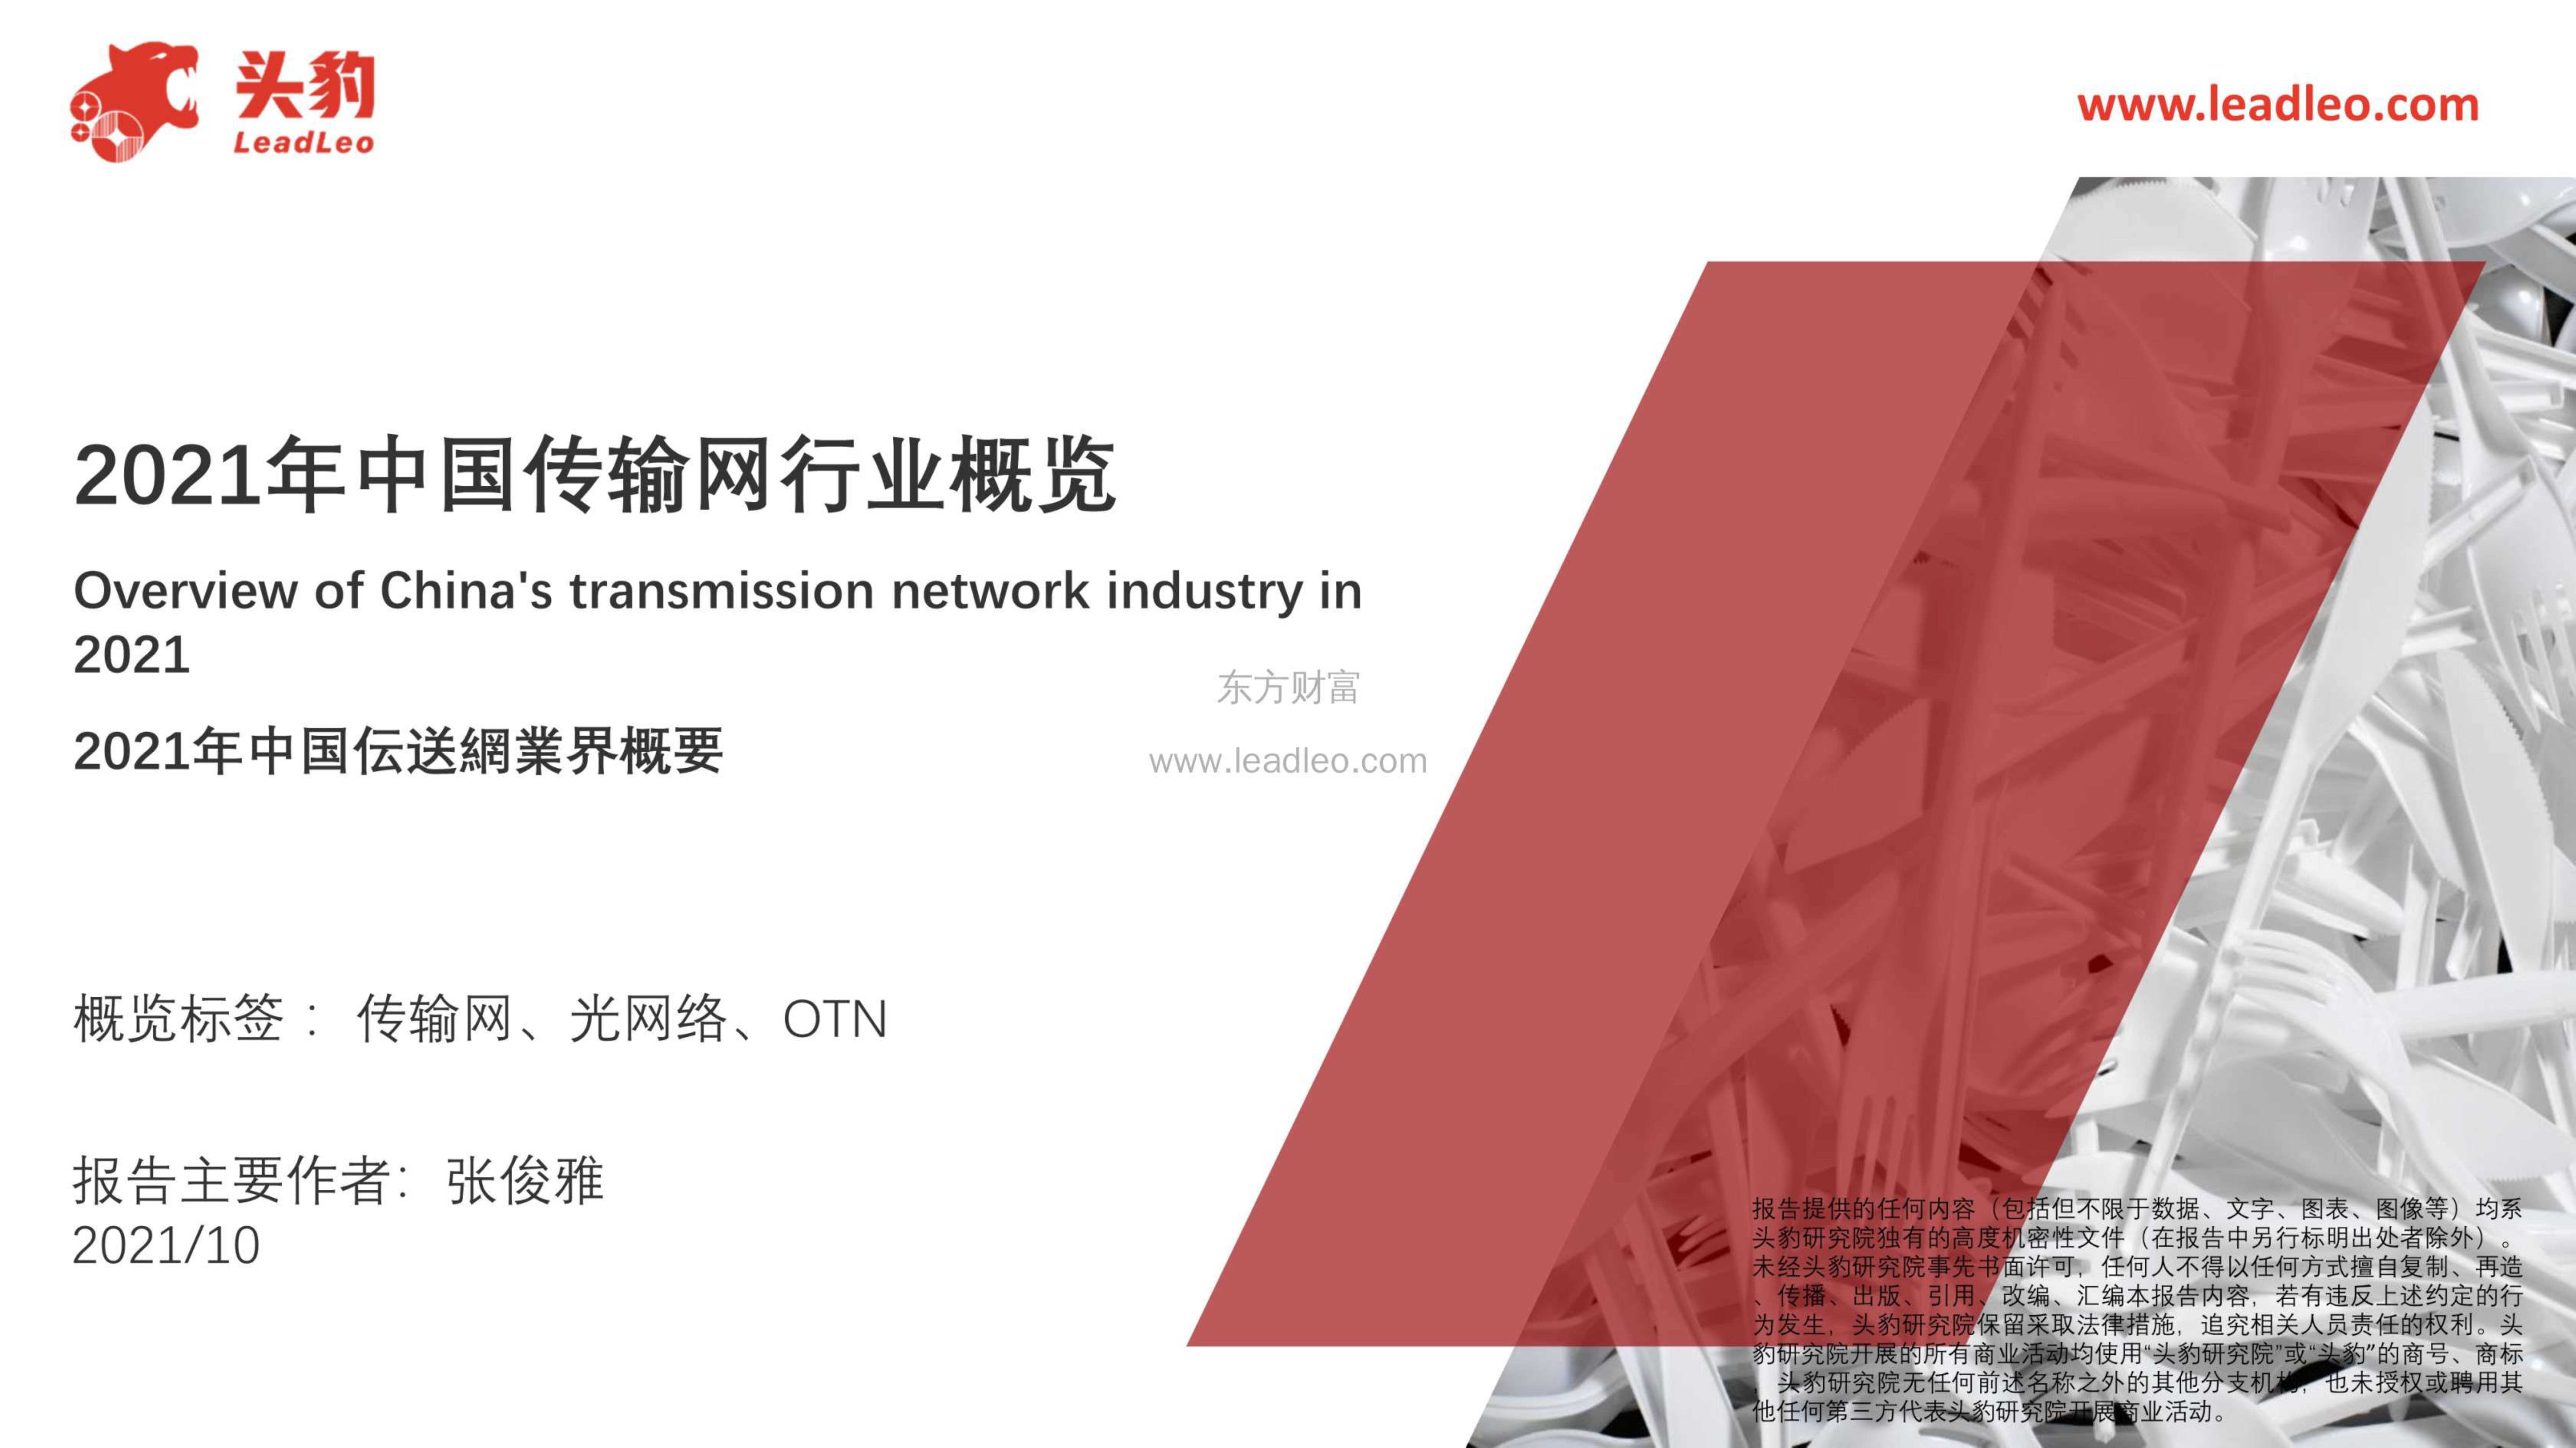 头豹研究院-2021年中国传输网行业概览-2021.11-42页